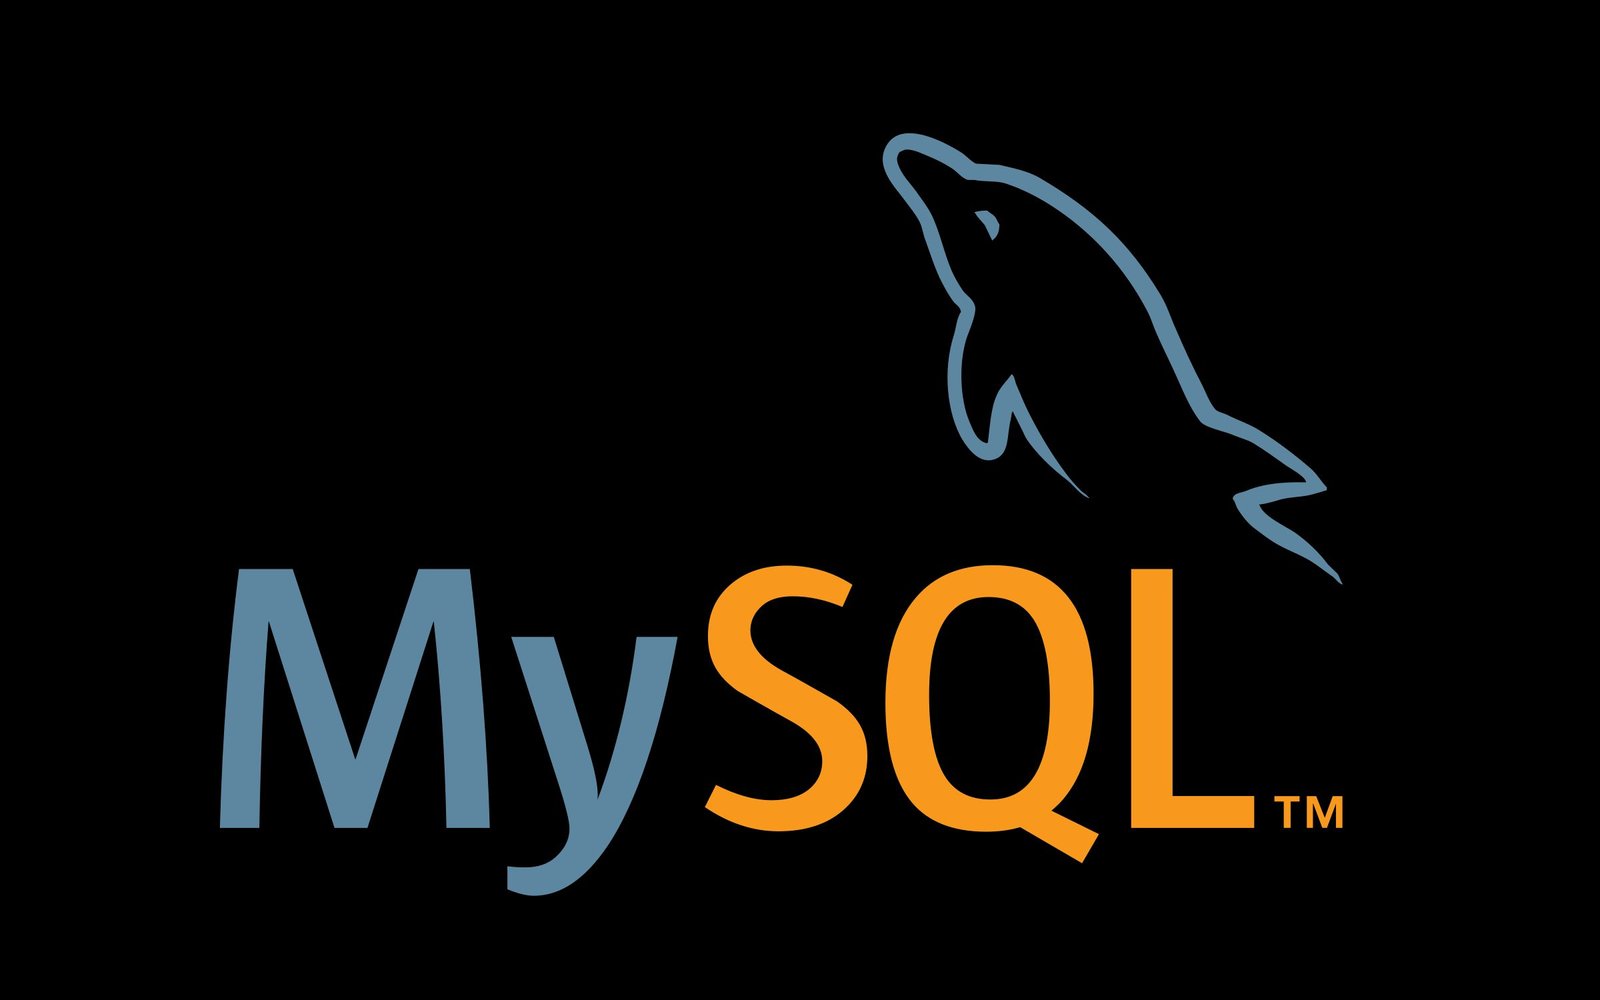 MySQL Sistem Manajemen Basis Data Relasional Open Source Yang Efisien